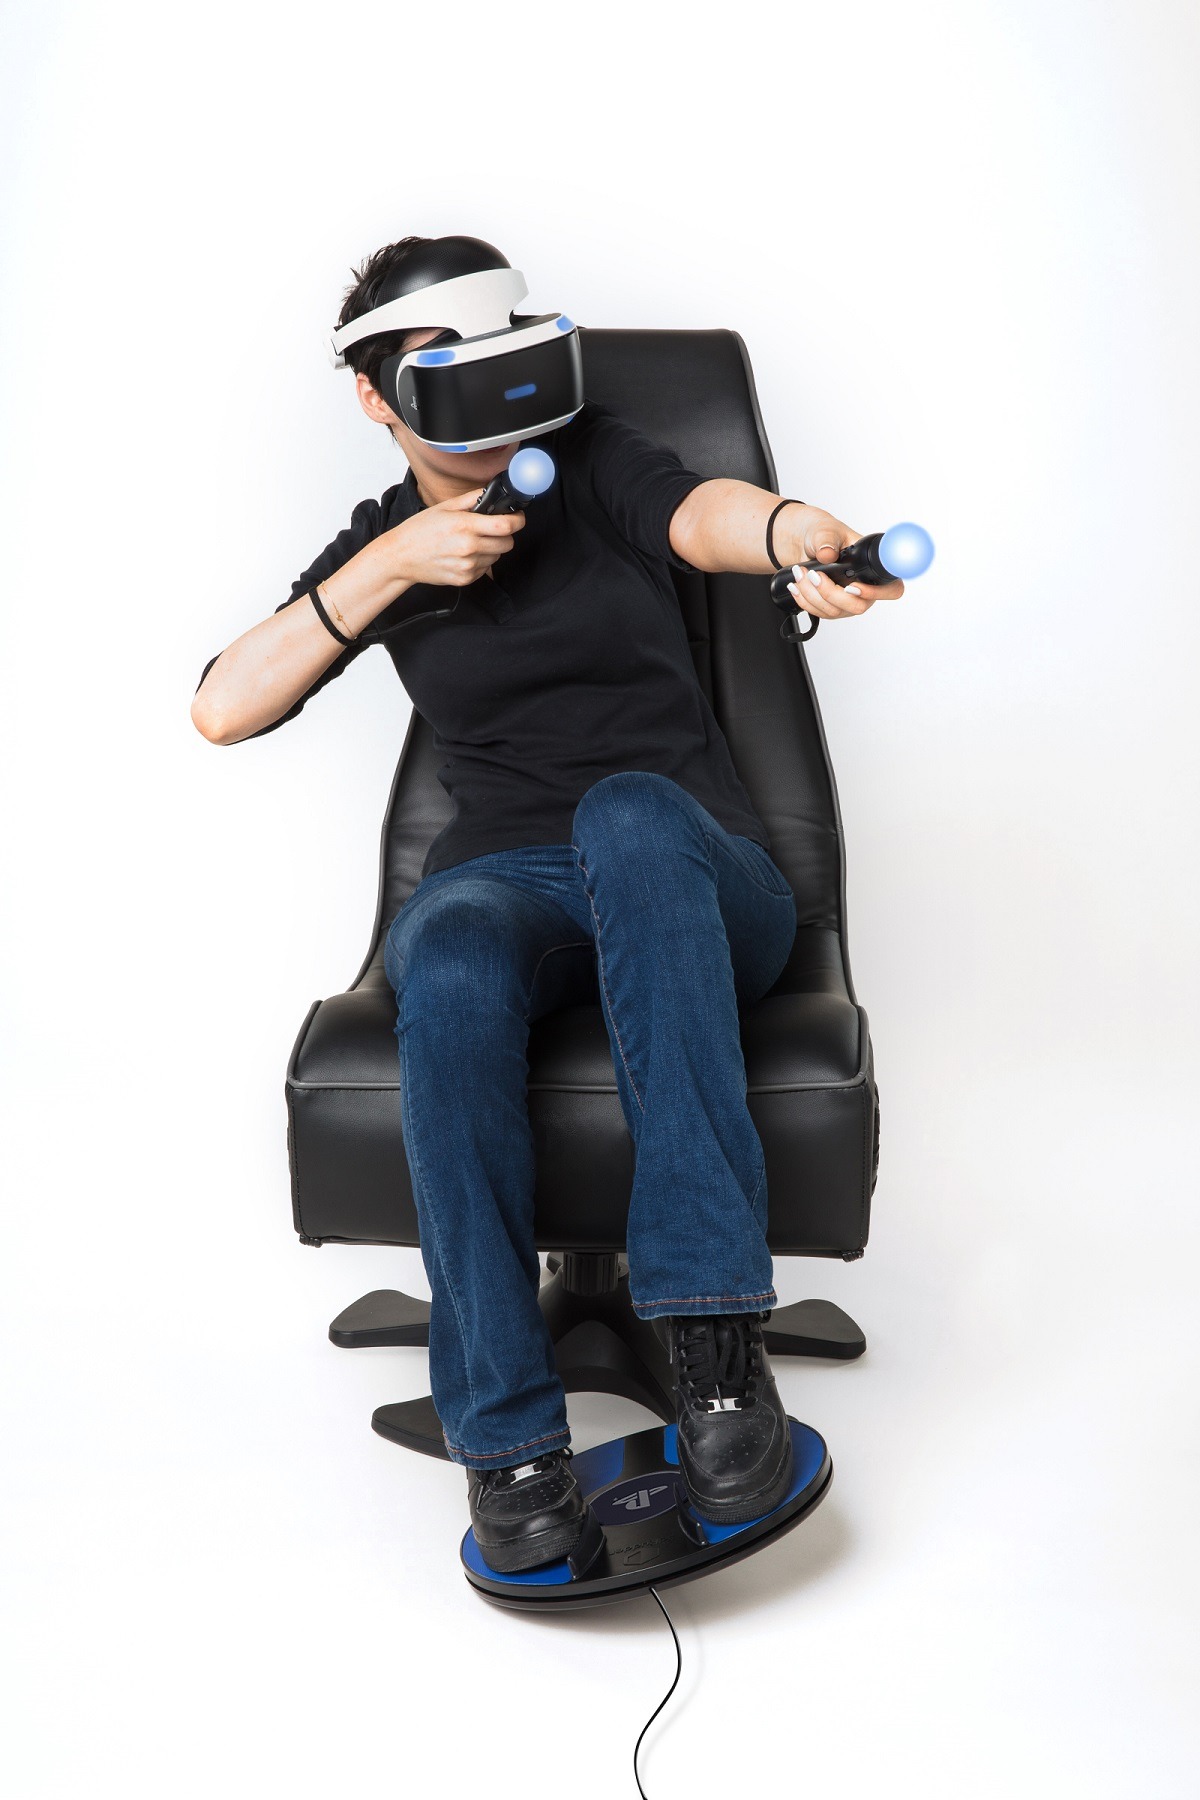 Игры для vr очков с контроллерами. 3drudder foot Motion Controller для PLAYSTATION VR. Sony PLAYSTATION 4 VR + Controller. VR шлем для ps3. PLAYSTATION VR 3.